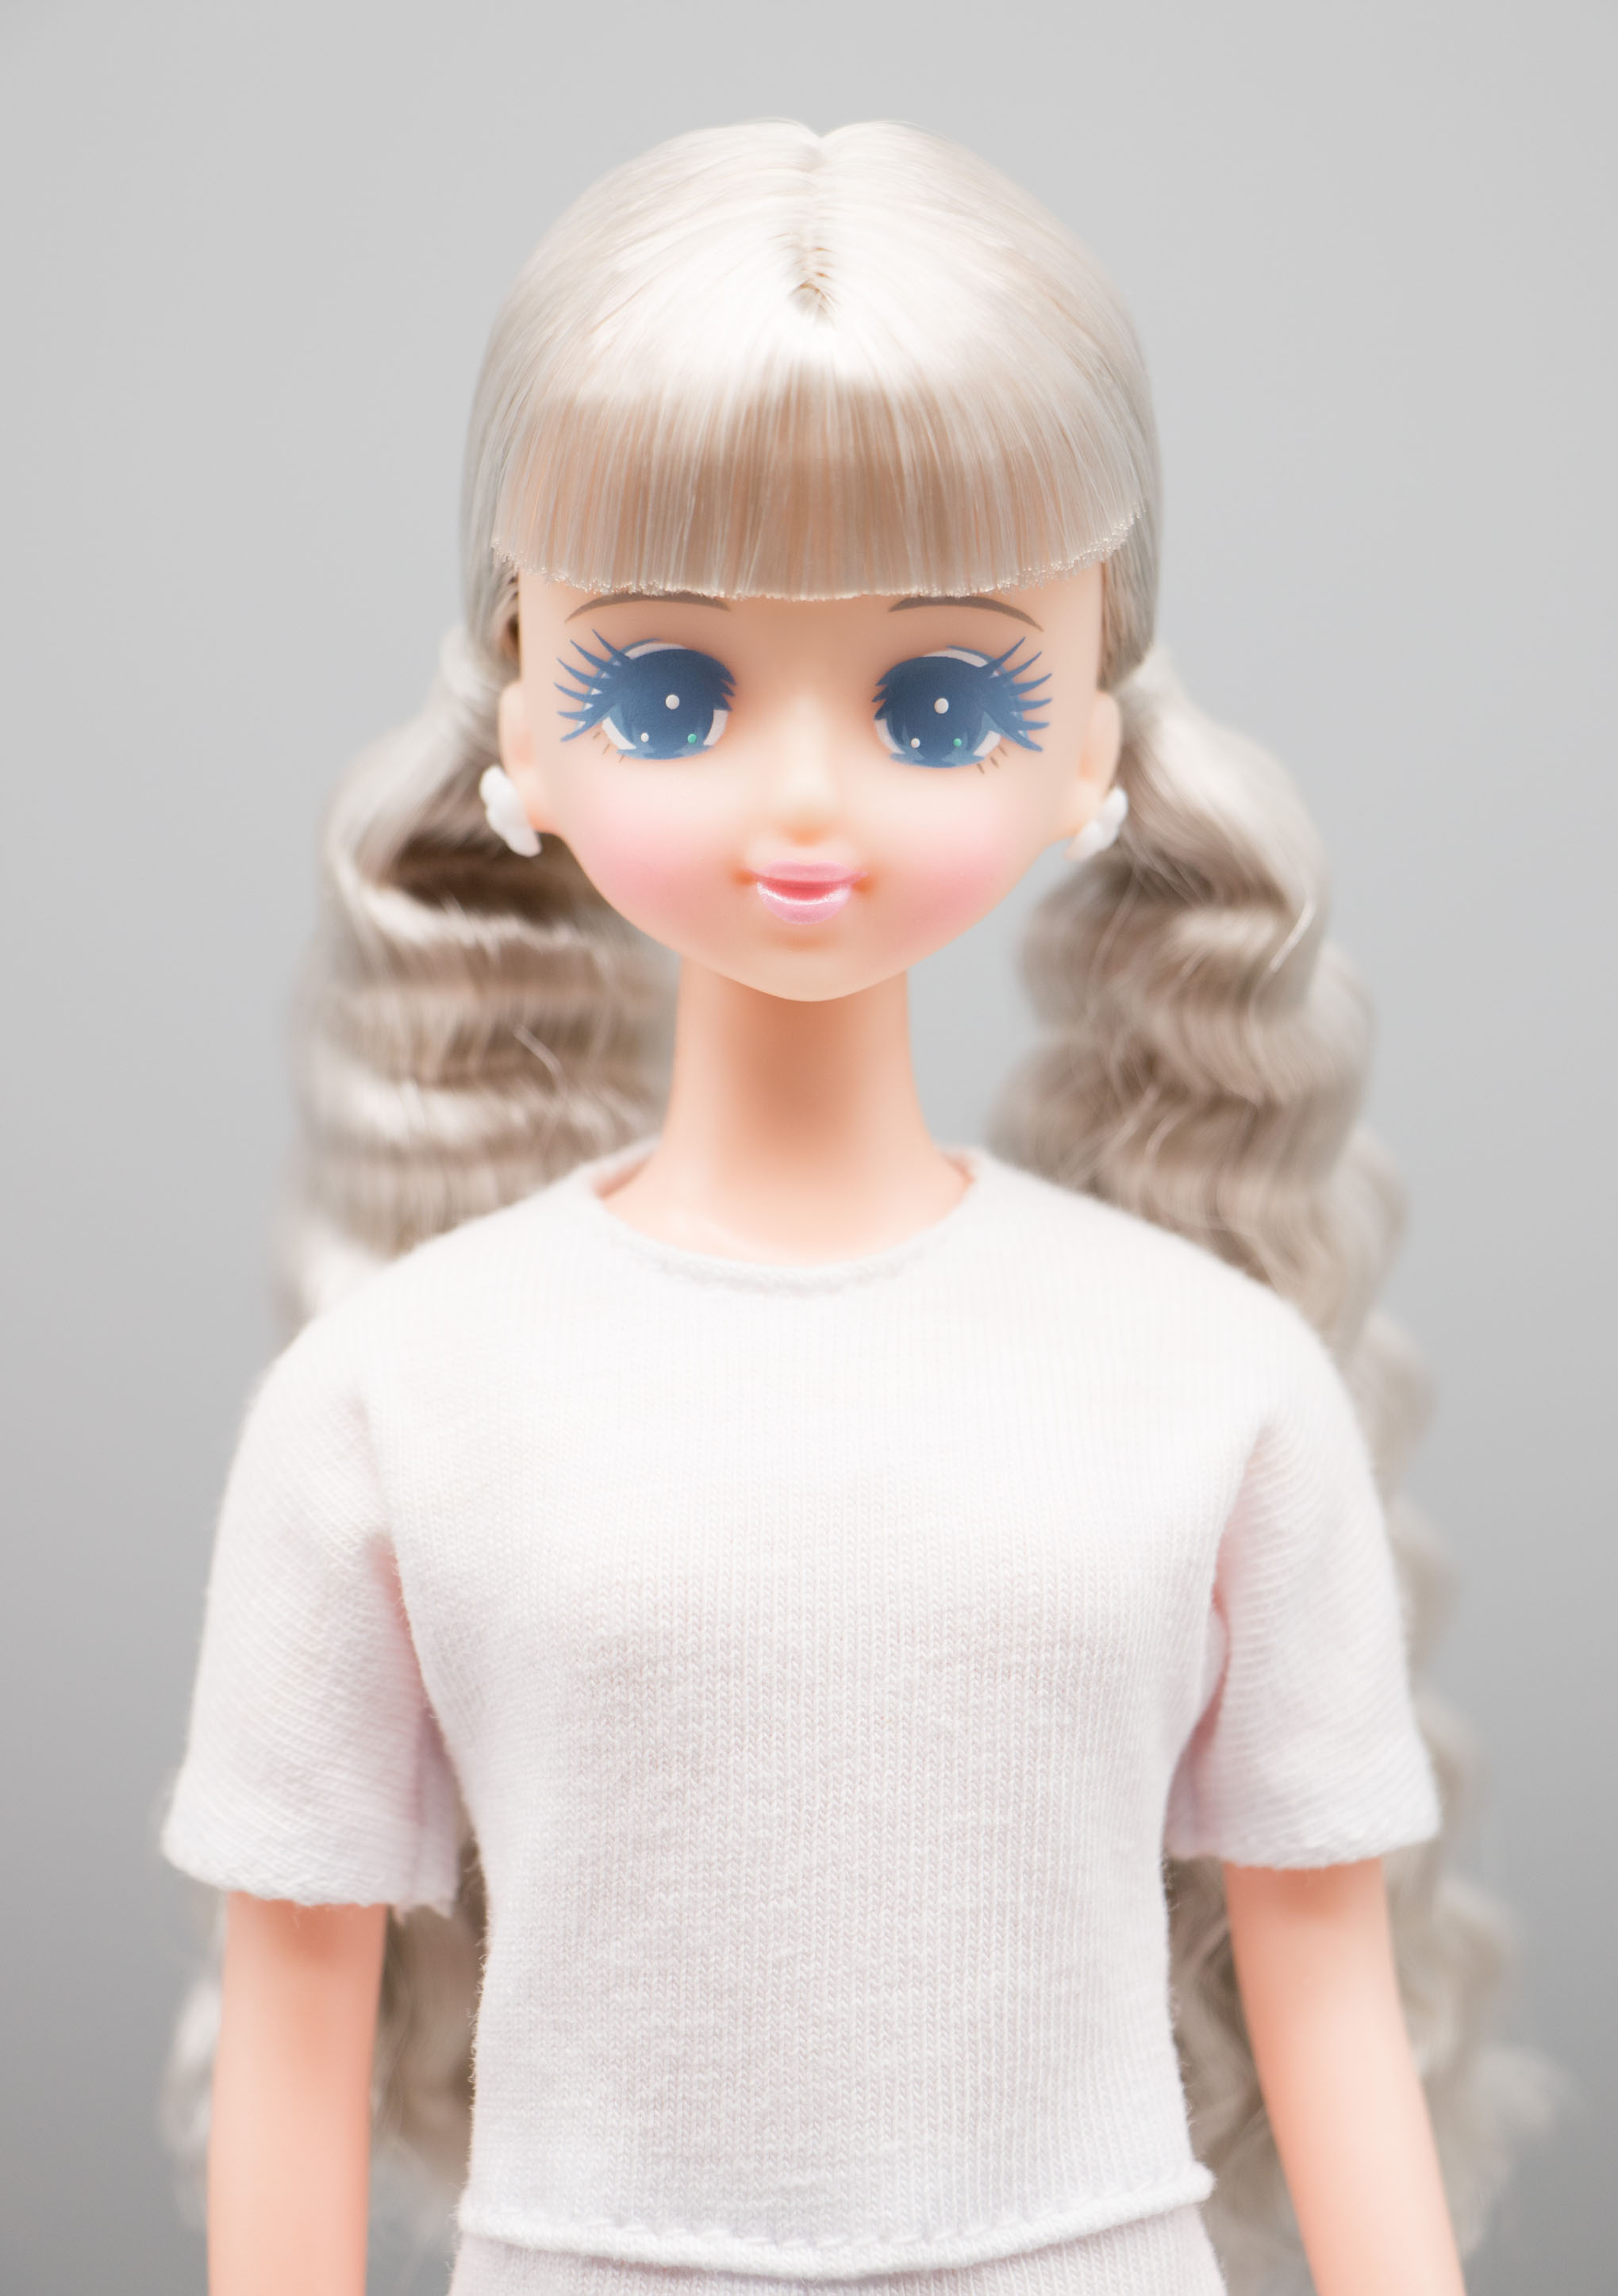 日本直販オンライン レア オリジナルドール プラスチックケース入り ジェニー他 リカちゃんキャッスル おもちゃ/人形